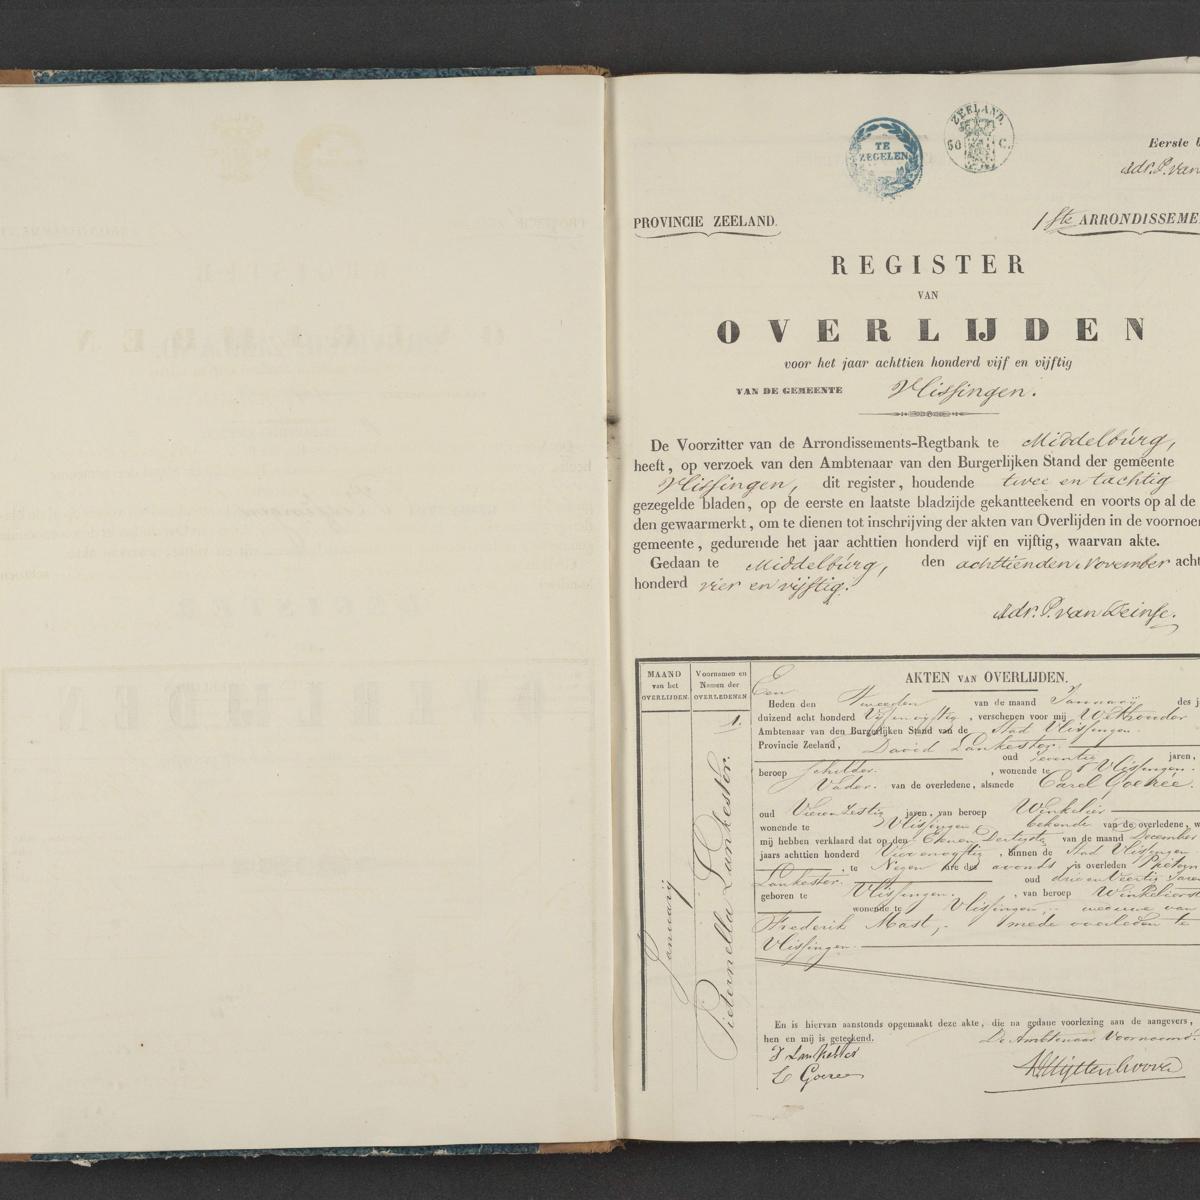 Civil registry of deaths, Vlissingen, 1855, record 1